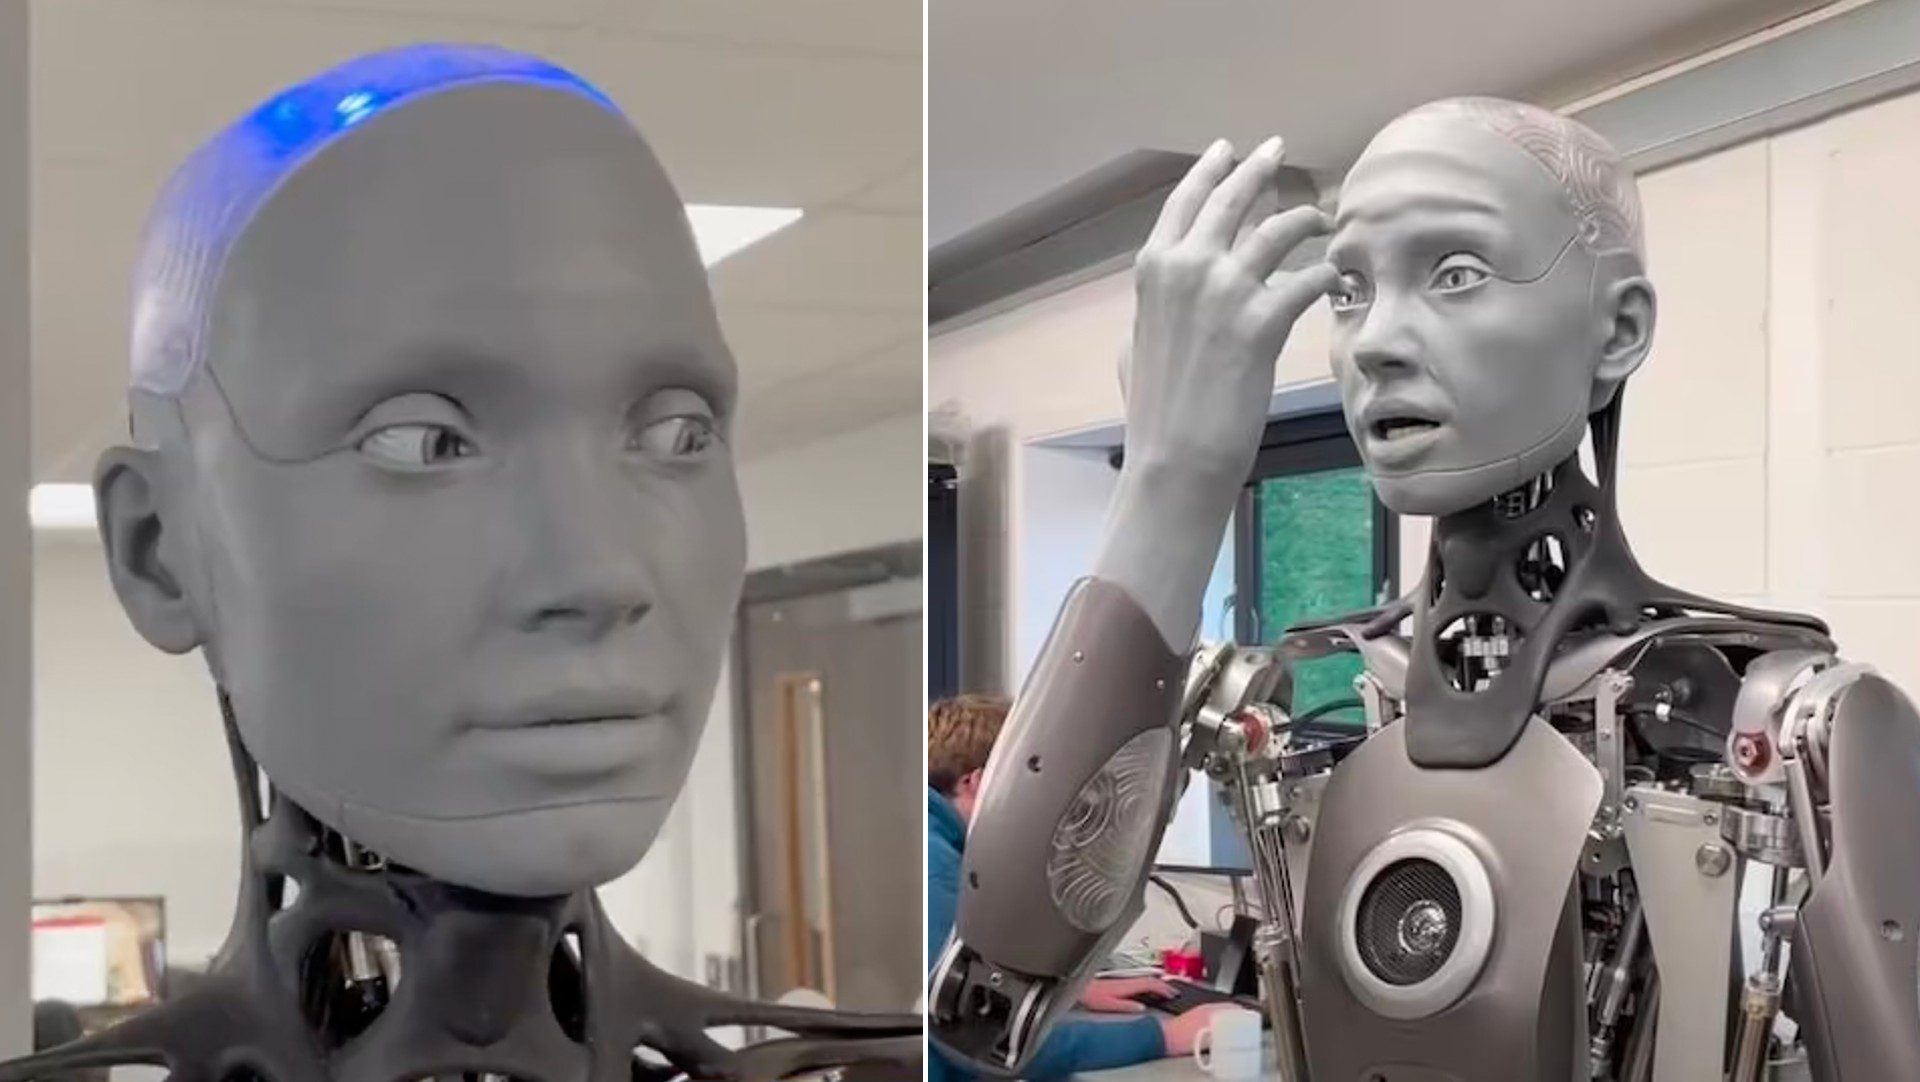 Voici une séléction des robots humanoïdes les plus évolués